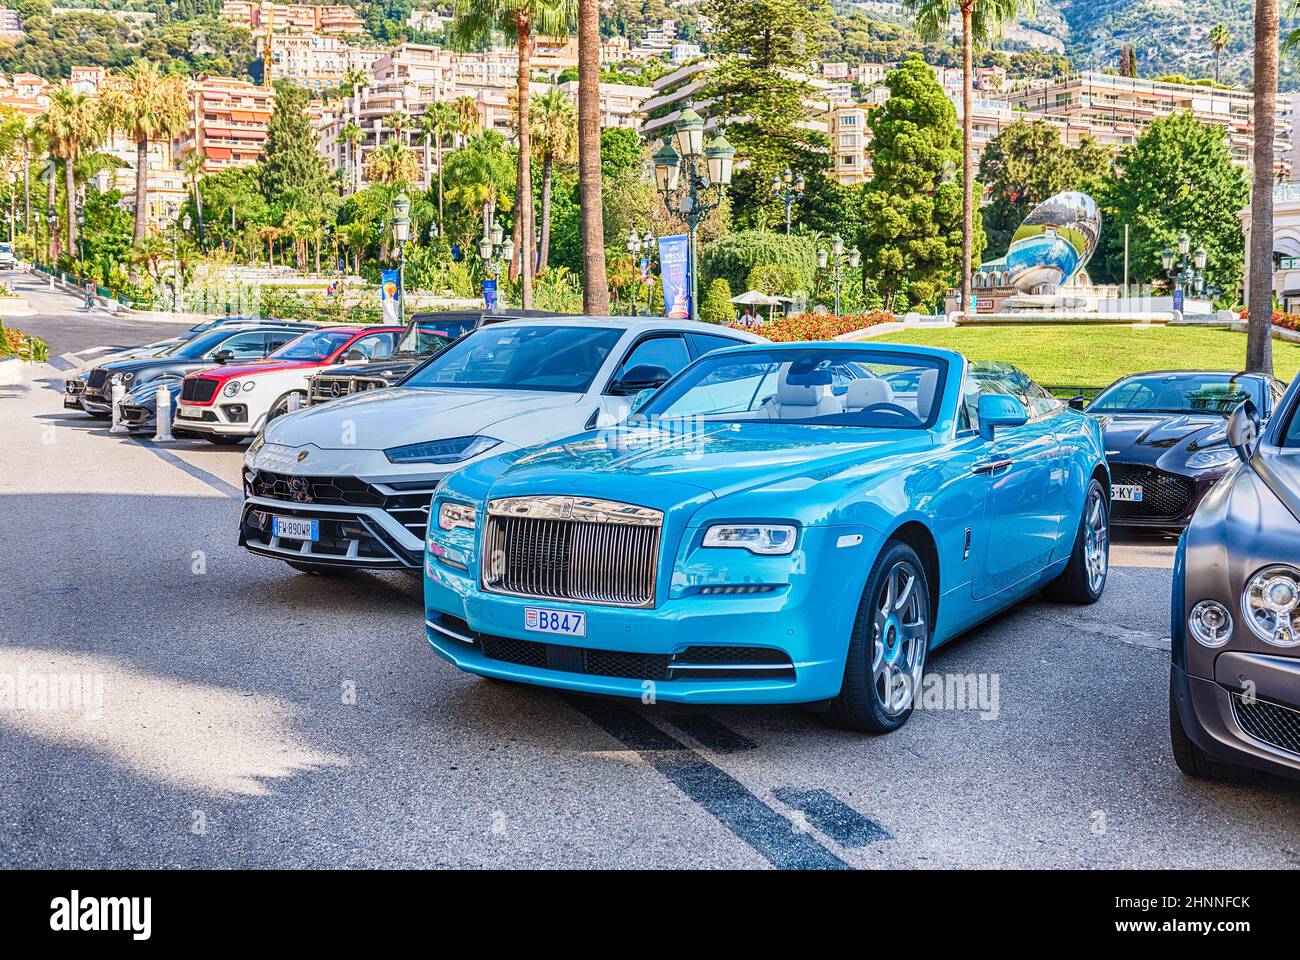 Luxury cars in Place du Casino, Monte Carlo, Monaco Stock Photo